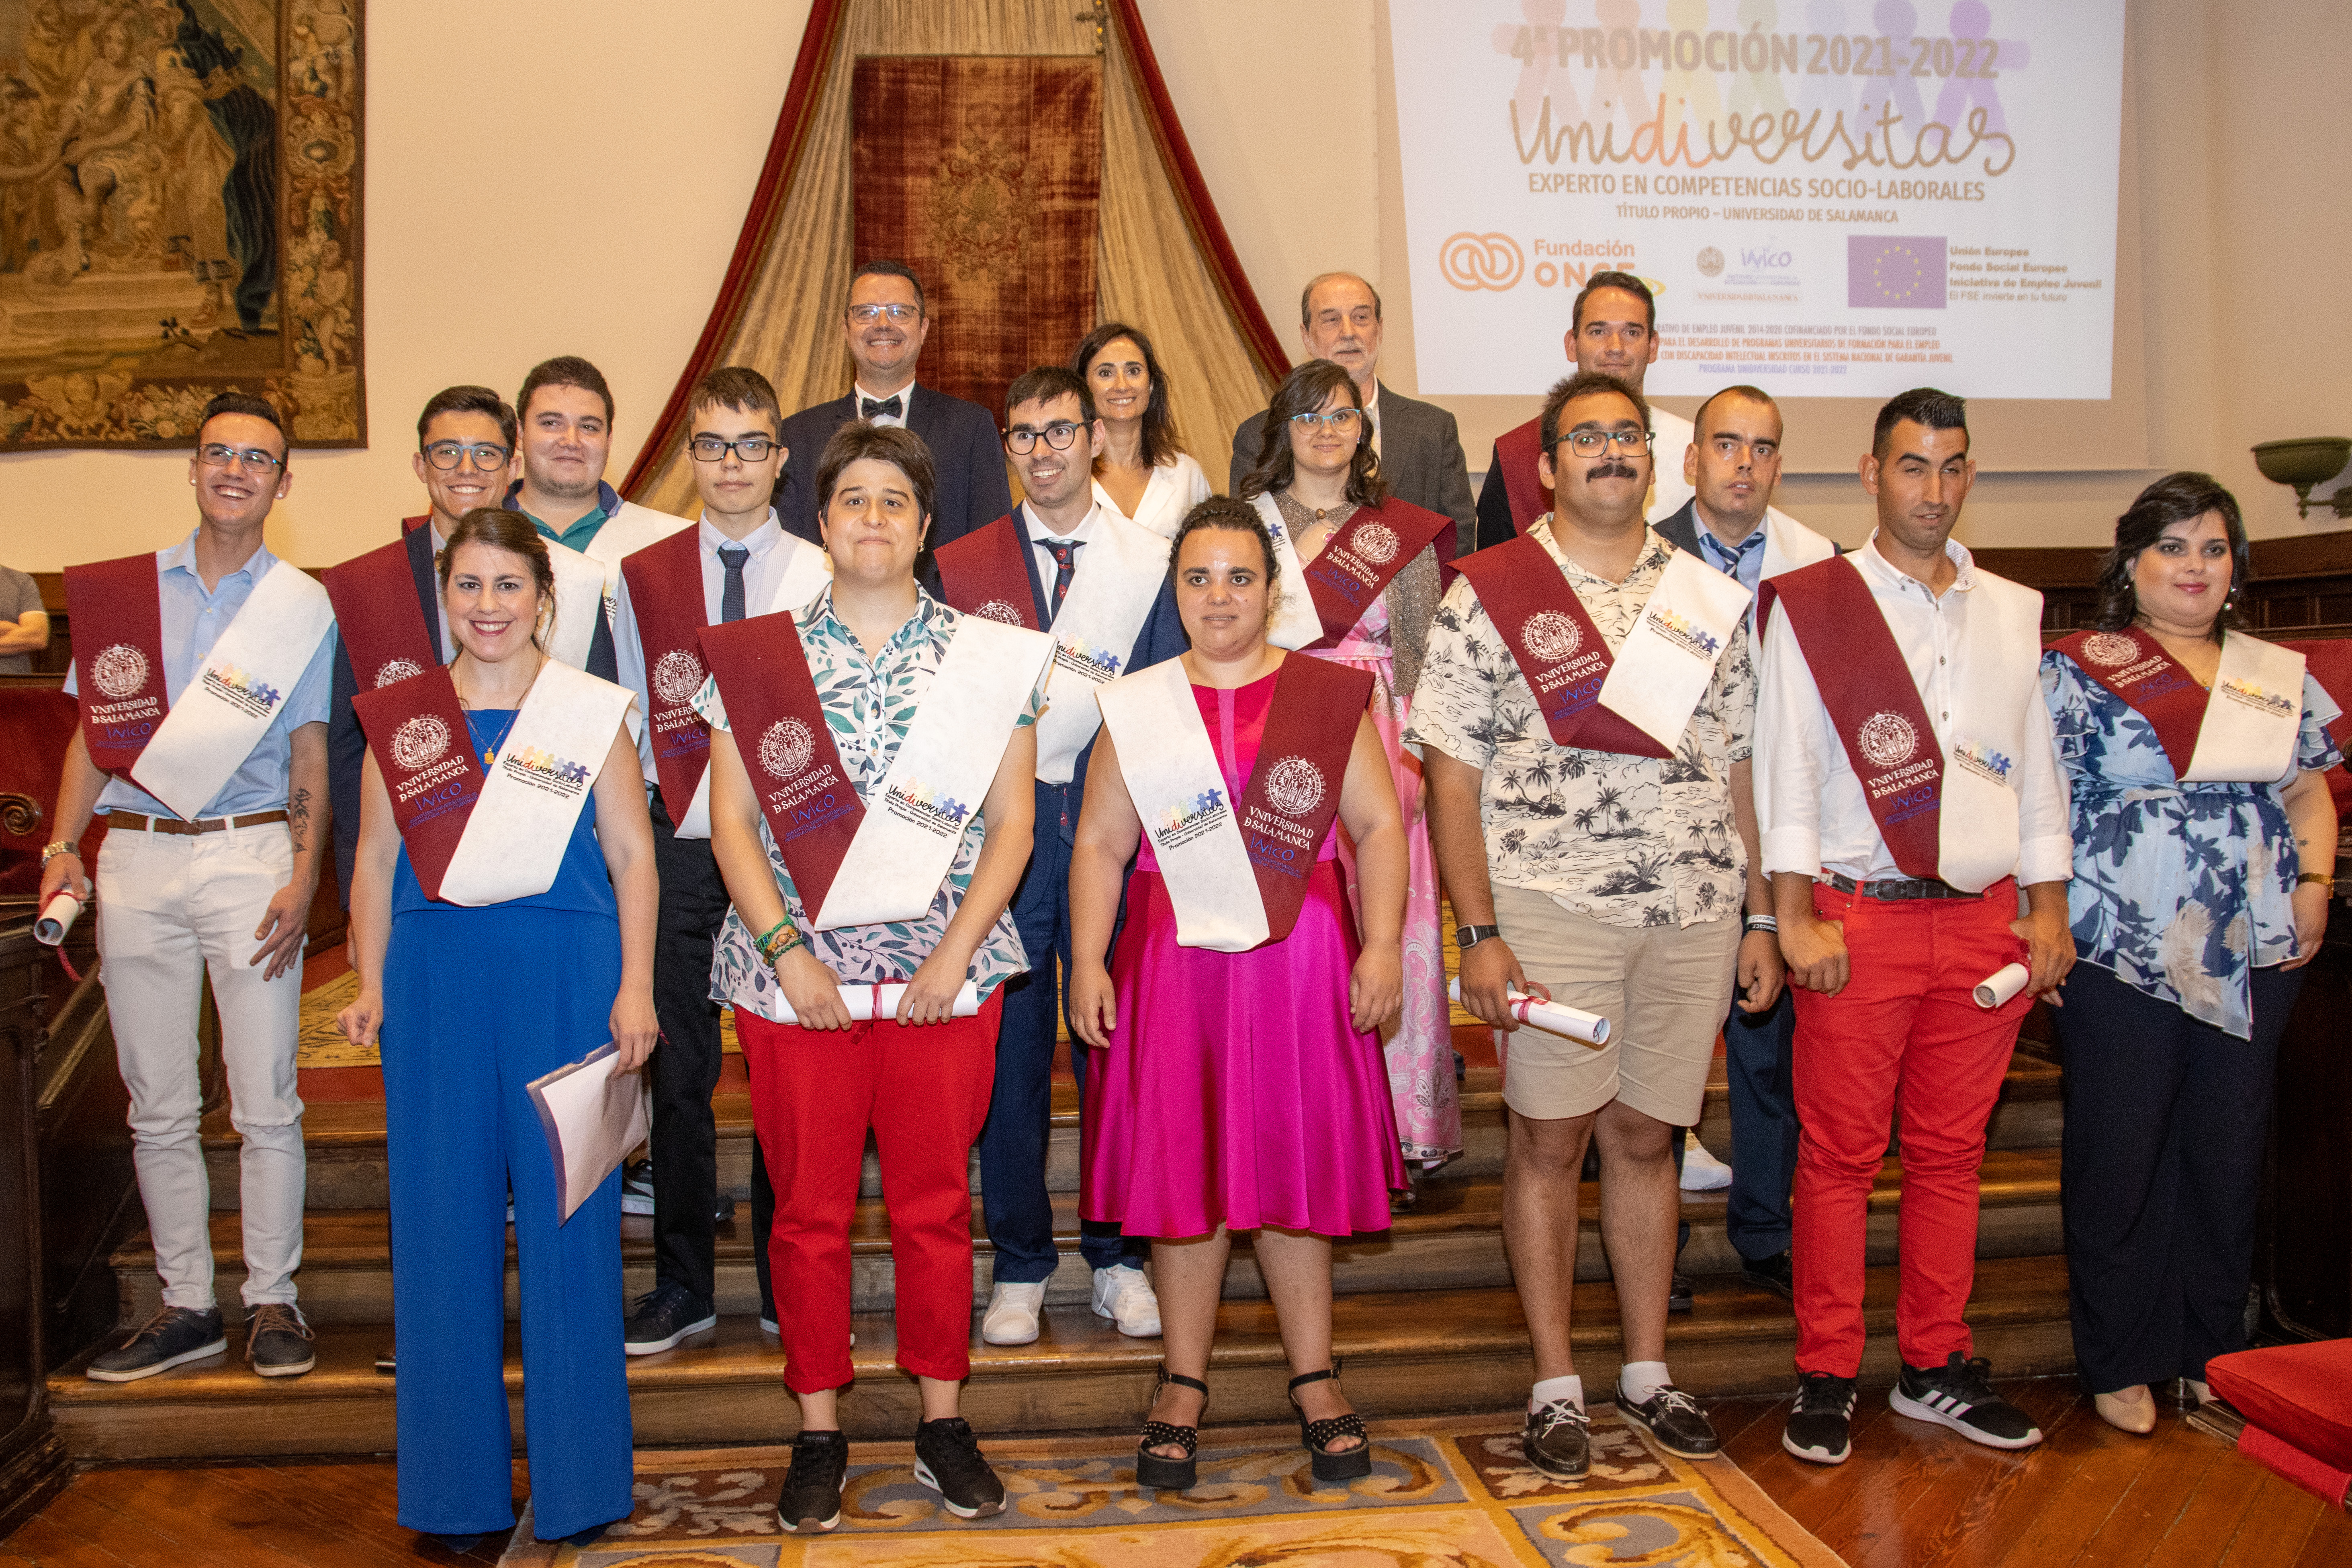 Catorce jóvenes con discapacidad intelectual culminan su formación en la Universidad de Salamanca del título propio de Experto en Competencias Sociolaborales